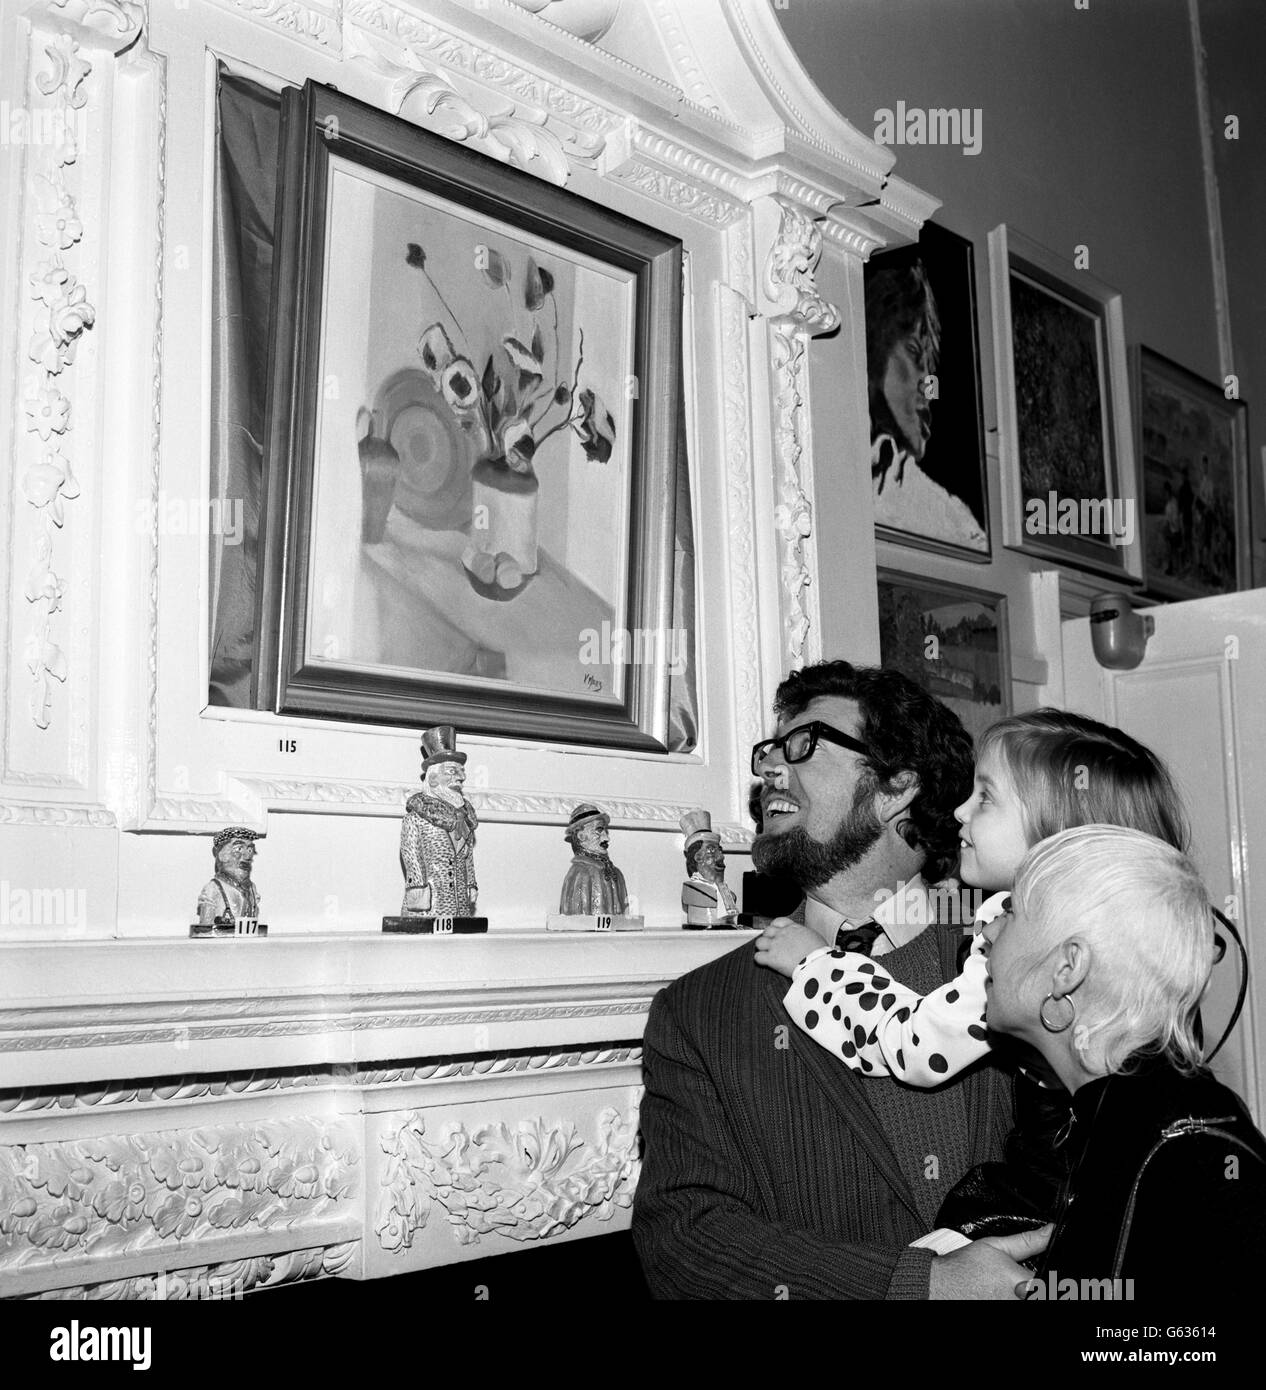 Rolf Harris, artiste australien, avec sa femme ALWEN Hughes et sa fille Bindi, 6 ans, à la 14e exposition internationale d'art amateur.Rolf a ouvert l'exposition à la Heatherley School of Art de Warwick Square, où il était élève. Banque D'Images